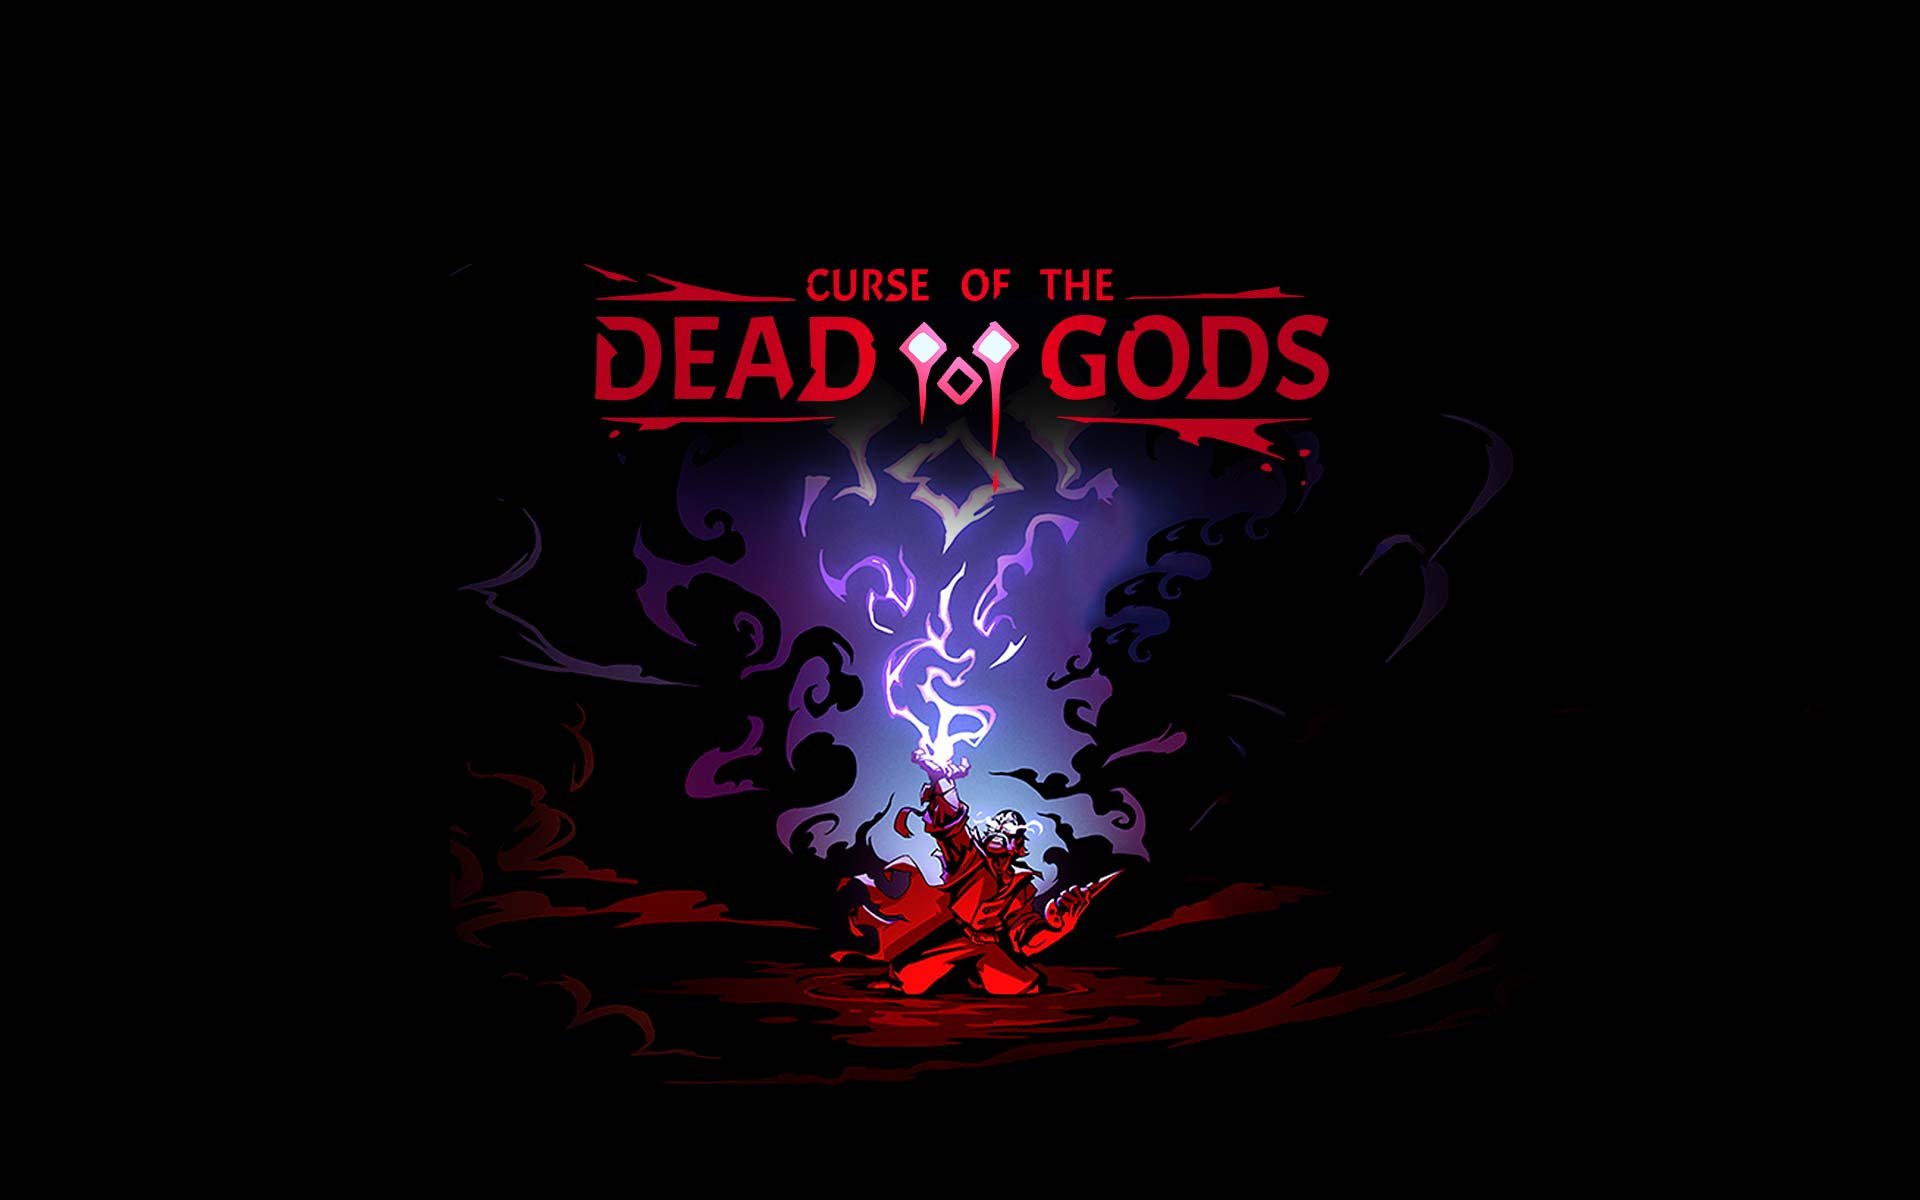 Compre Curse of the Dead Gods a partir de R$ 69.90